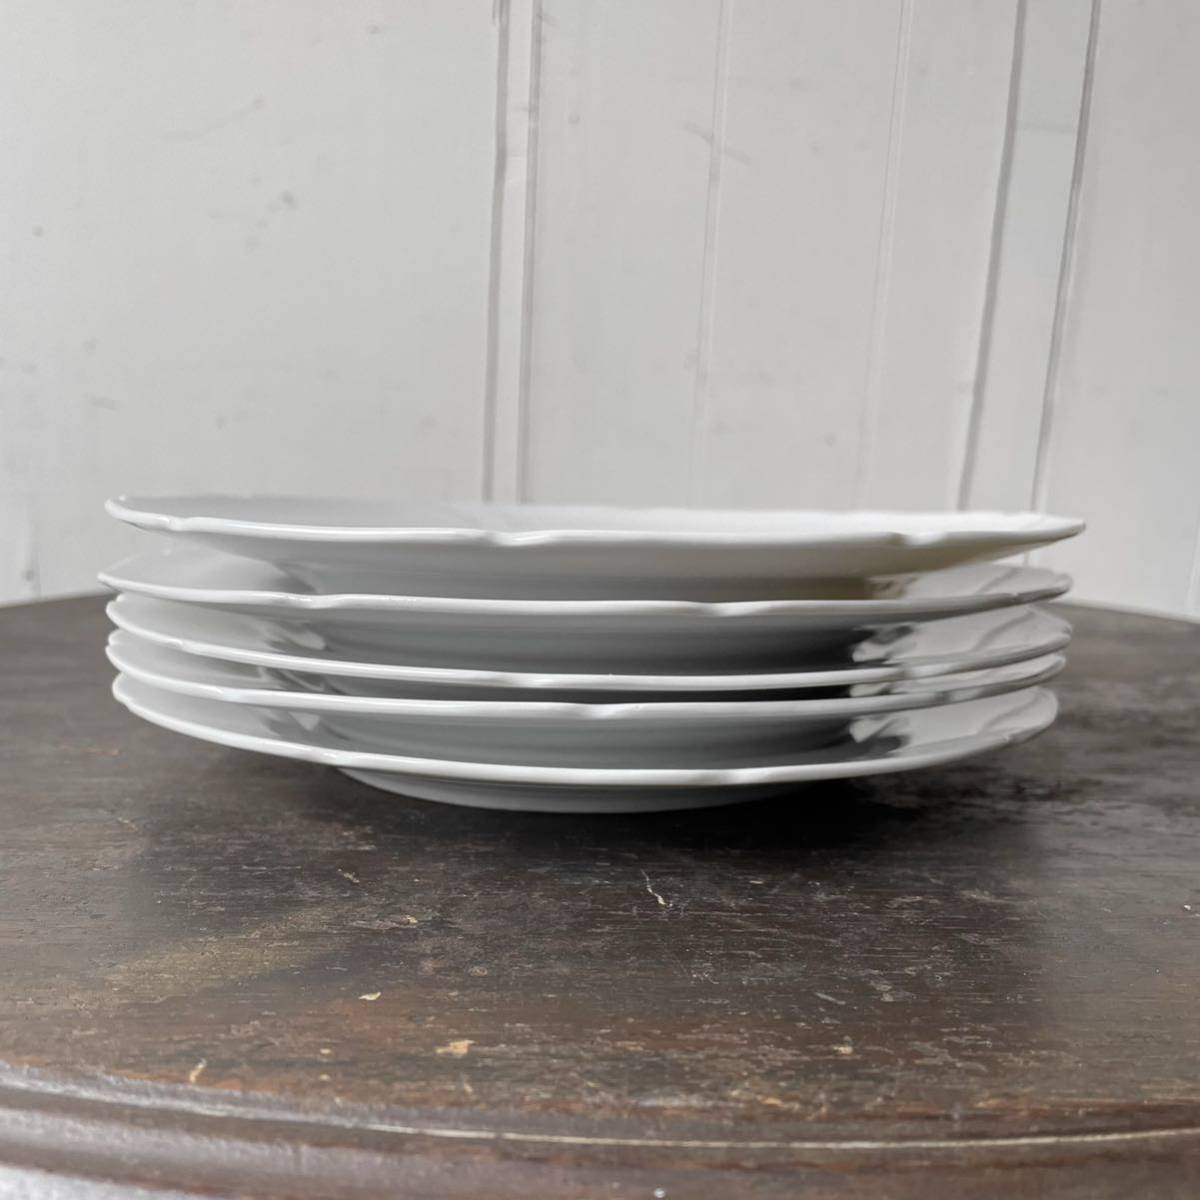 5枚set 古い フリル 中 リムプレート 白磁 デットストック 1970年代貿易 検: 取り皿 ケーキ サラダ メイン 陶器 アンティーク ビンテージの画像4